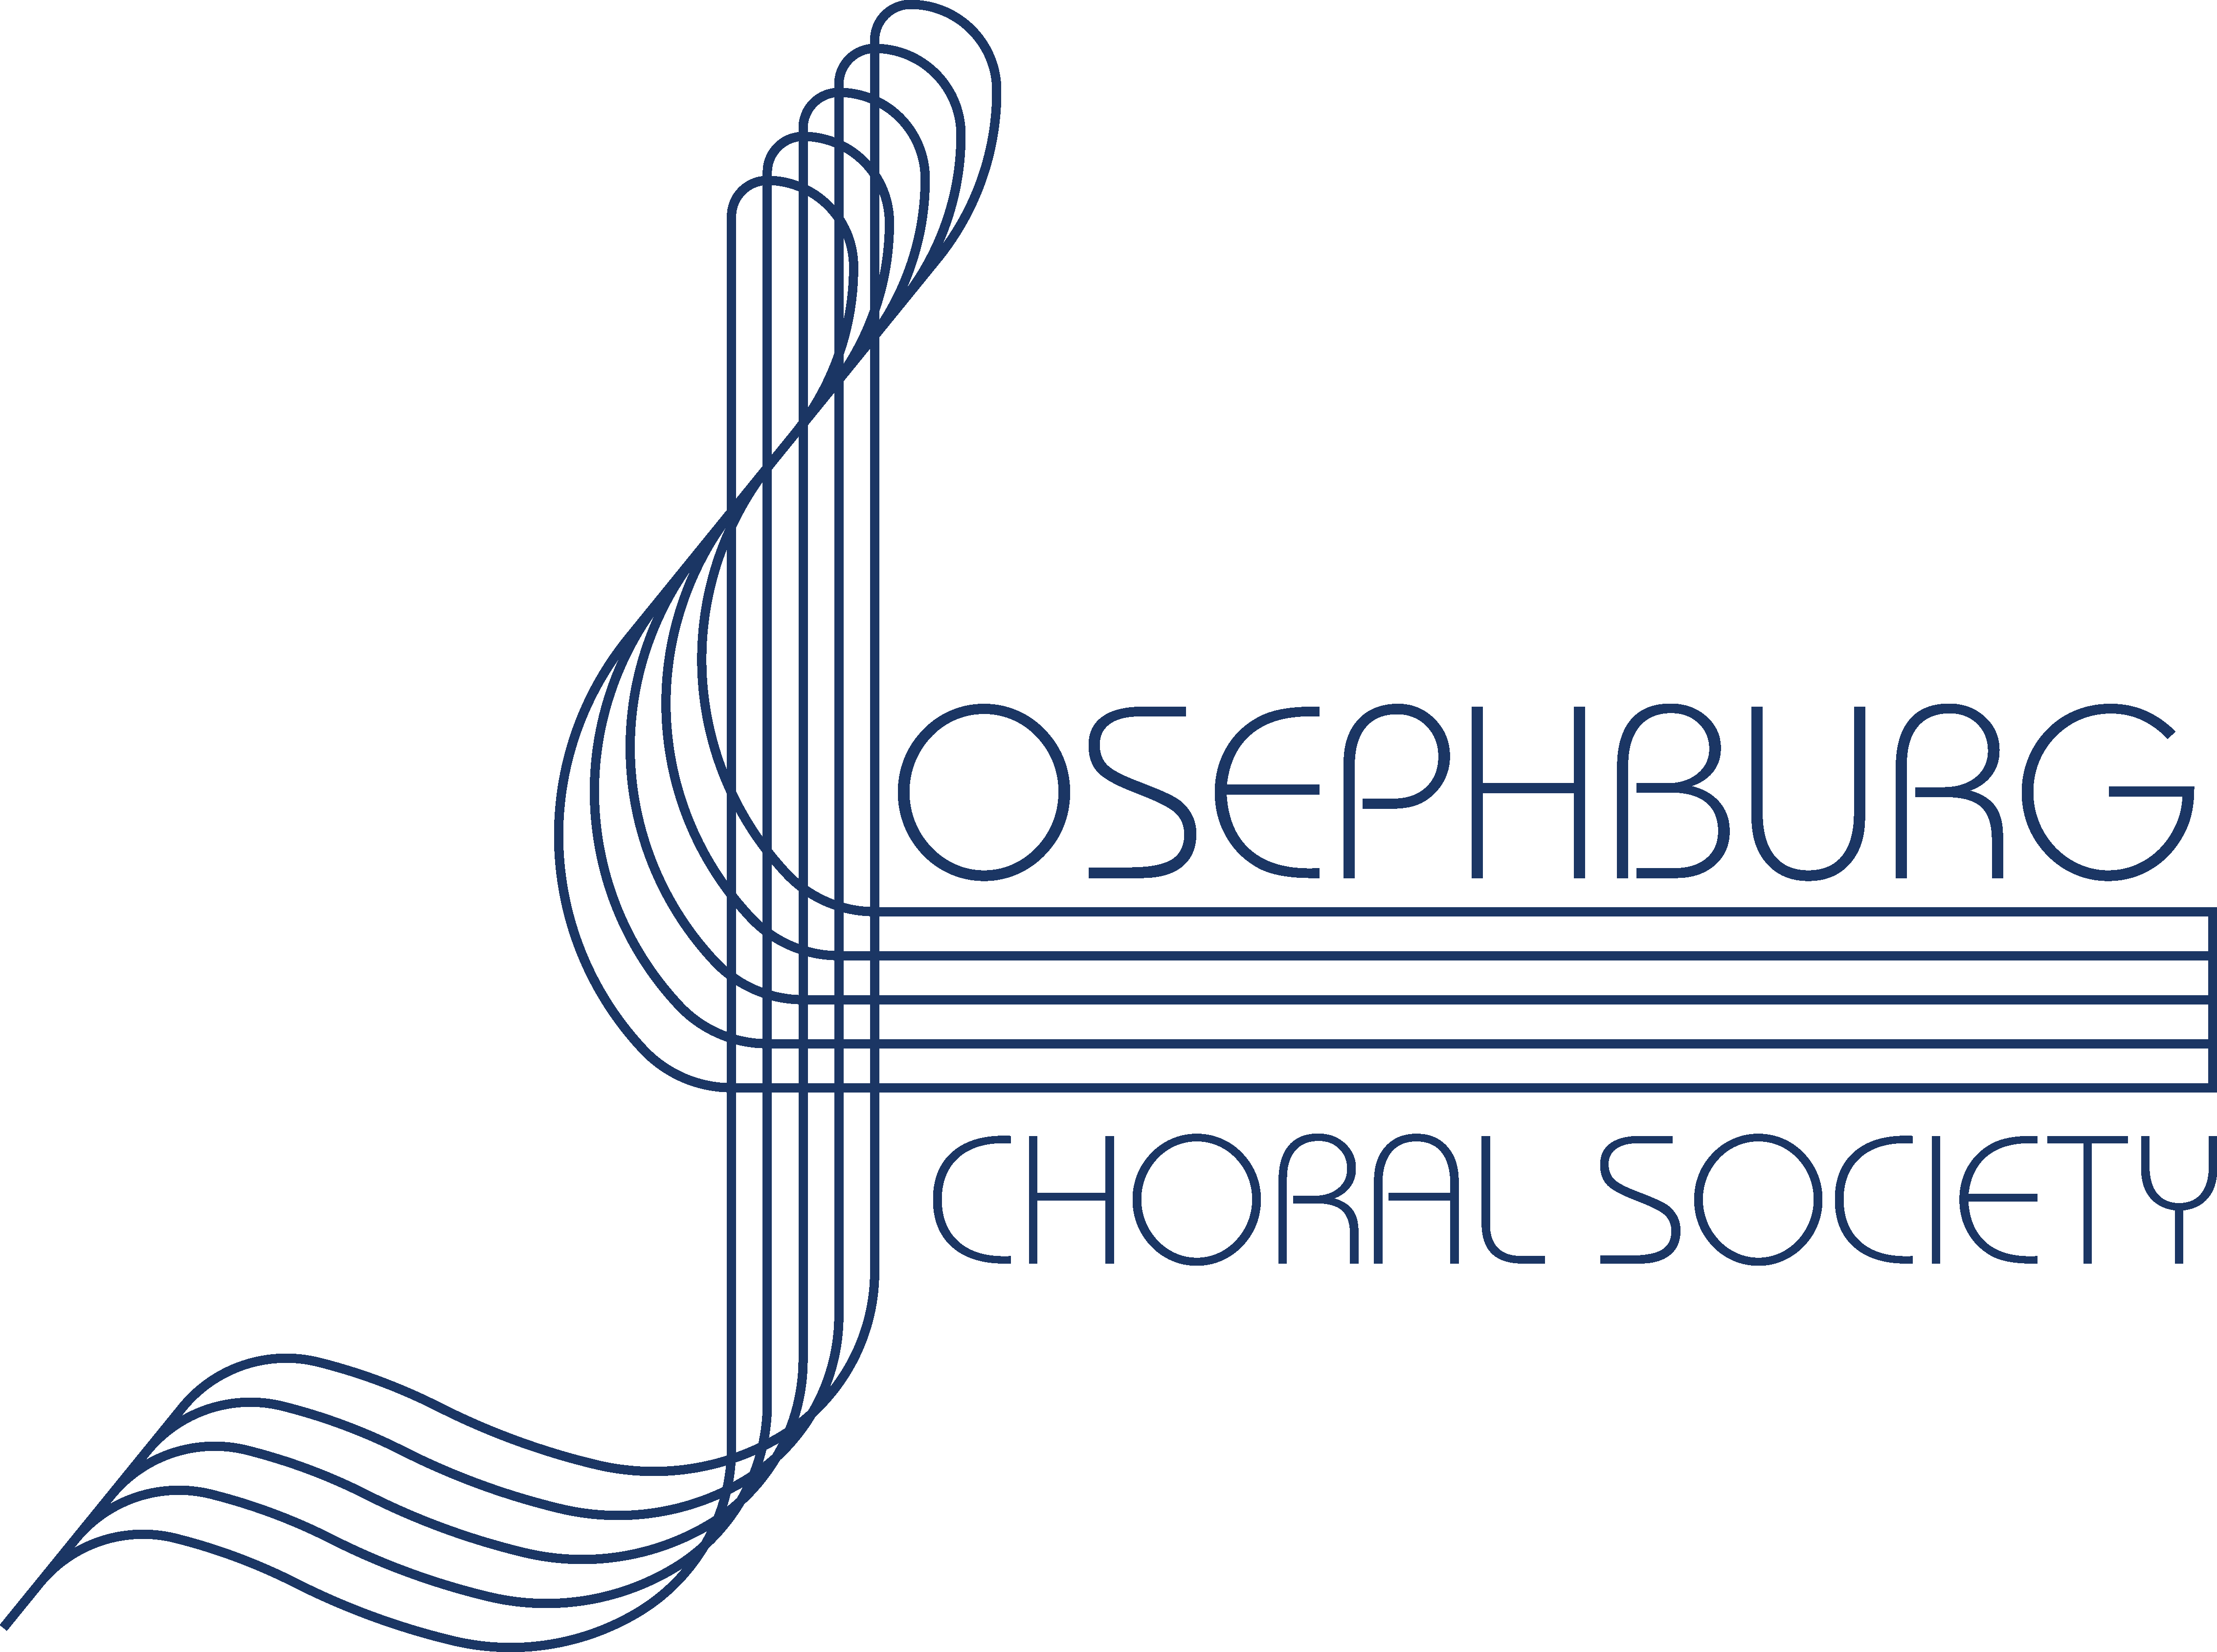 Josephburg Choral Society